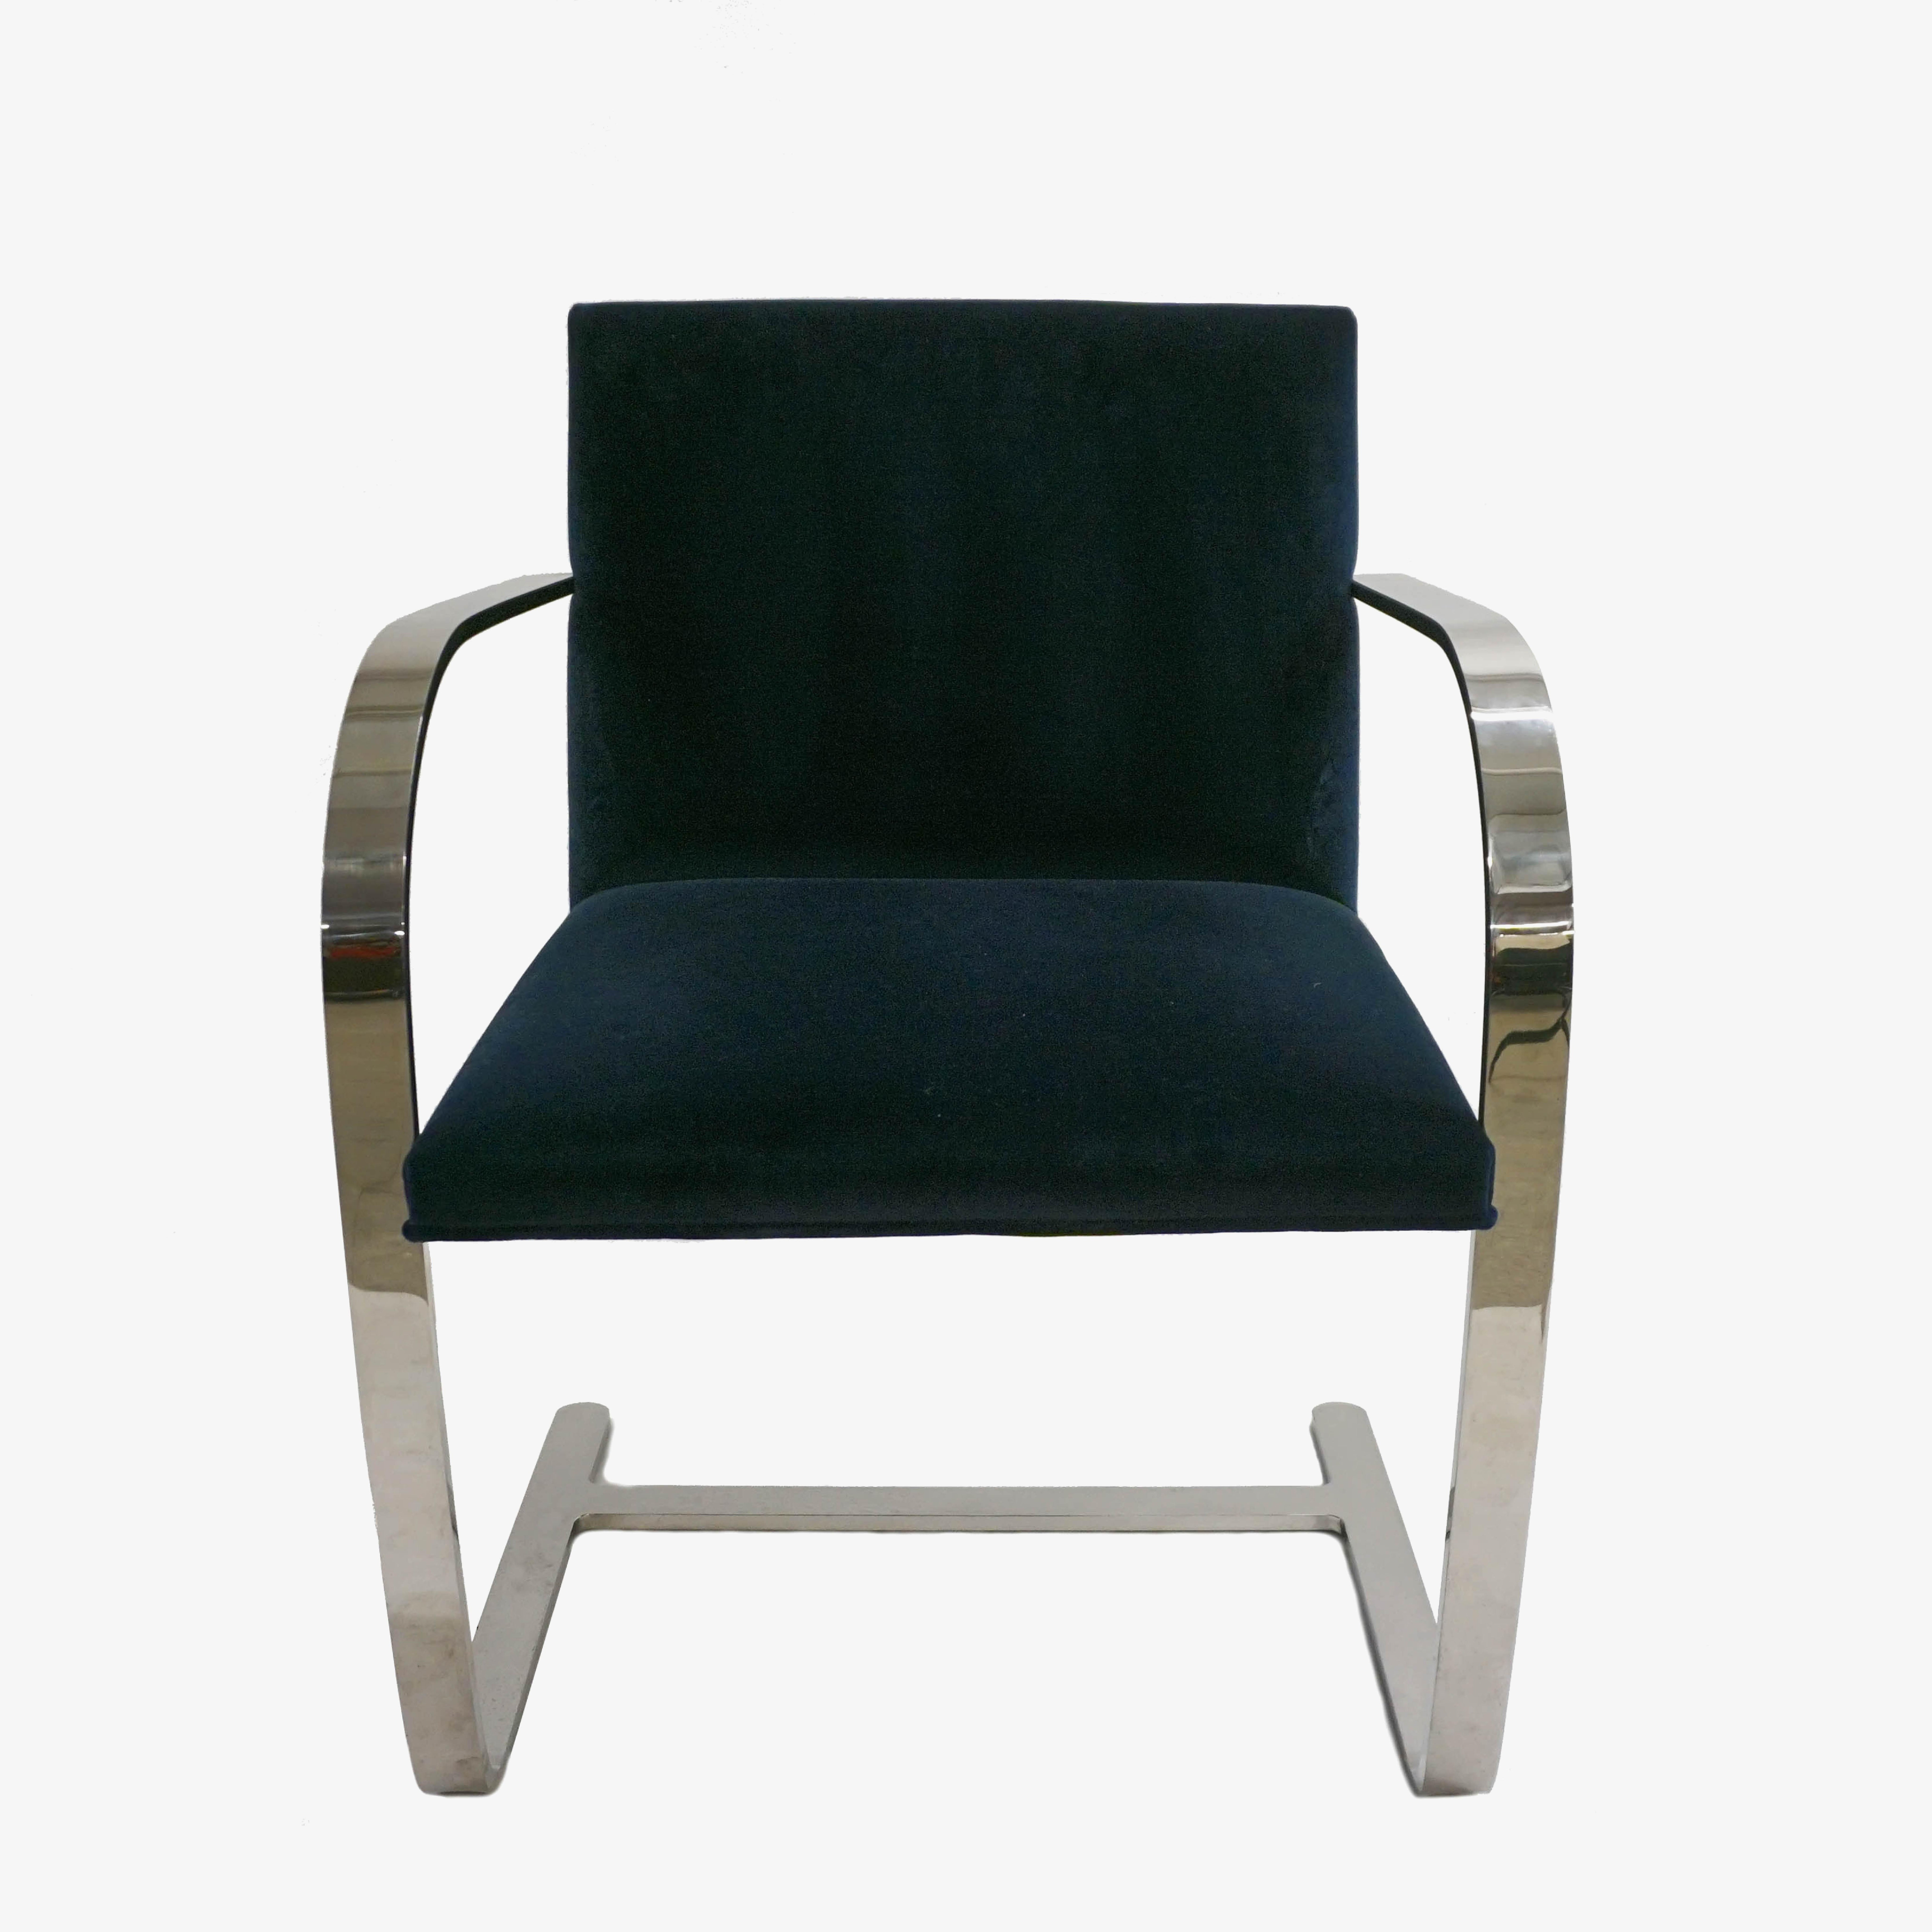 La définition du minimalisme dans un design singulier, réalisé par le grand Ludwig Mies van der Rohe en 1929, la chaise à barre plate de Brno est exactement cela. Il s'agit de chaises Mies van der Rohe for Knoll d'édition contemporaine, tapissées de